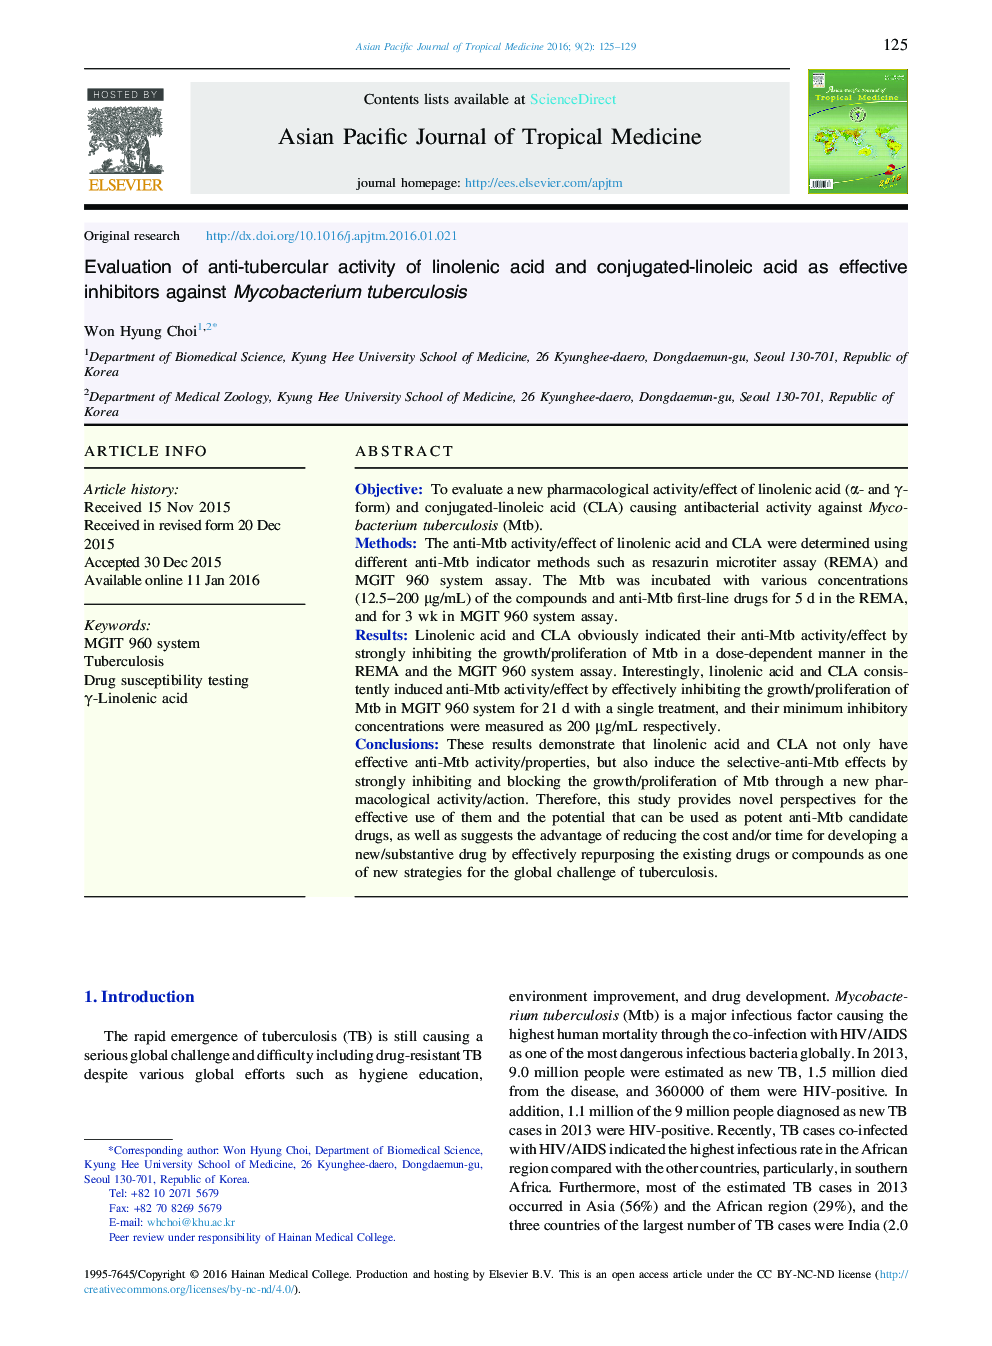 ارزیابی فعالیت ضد قارچی اسید لینولنیک و اسید کانولوئید-لینولئیک به عنوان مهار کننده های موثر در برابر میکوباکتریوم توبرکلوزیس 